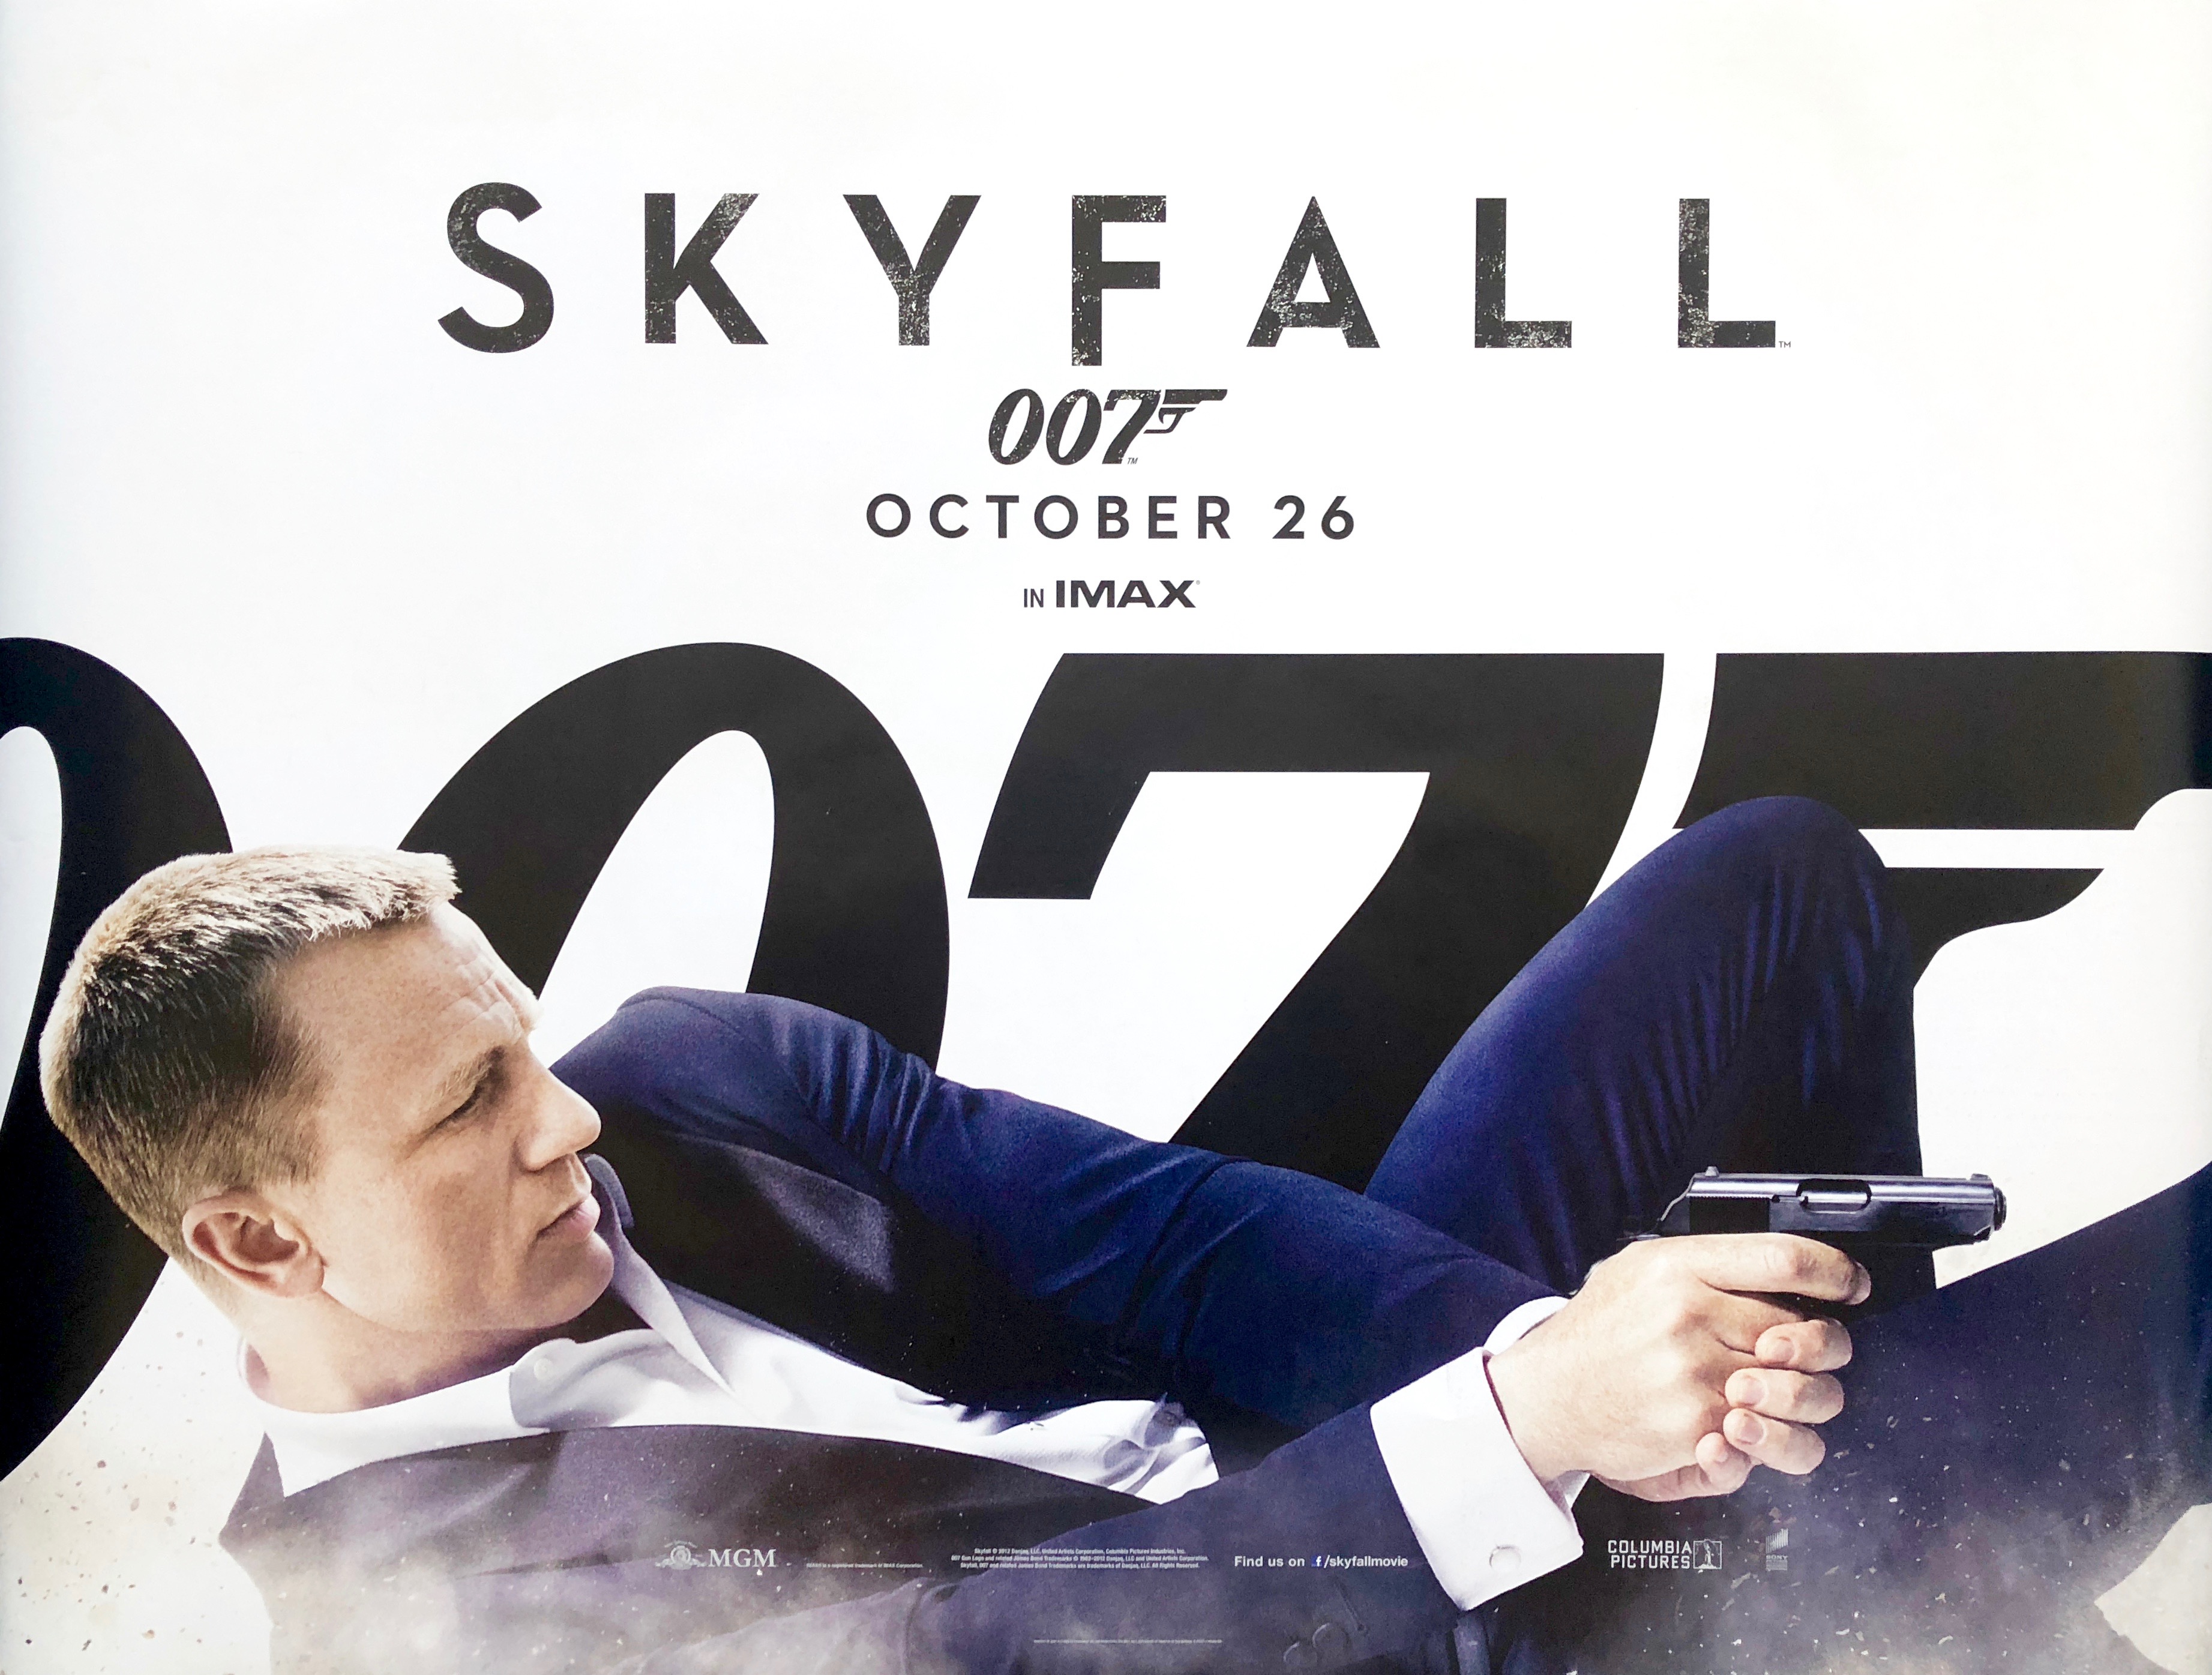 Original James Bond Skyfall Movie Poster 007 Daniel Craig Action 